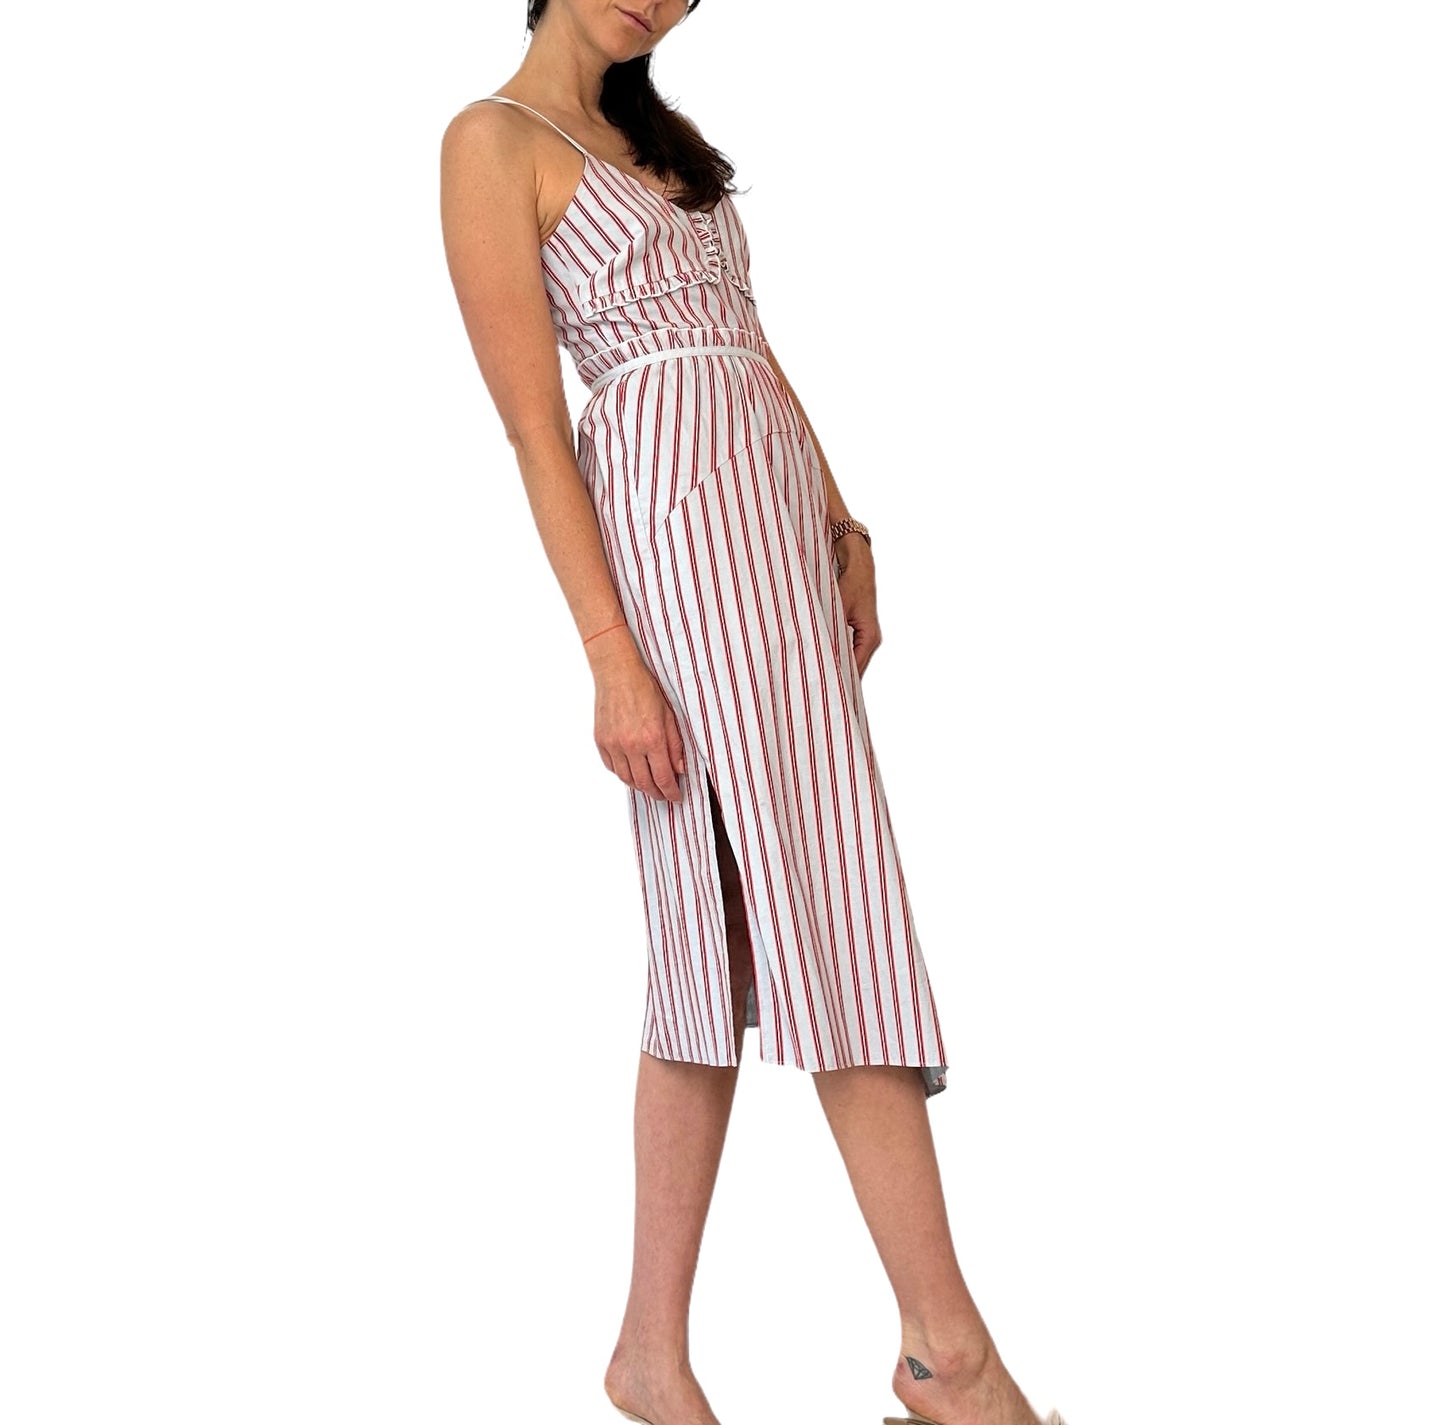 Blue & White Striped Dress - XS